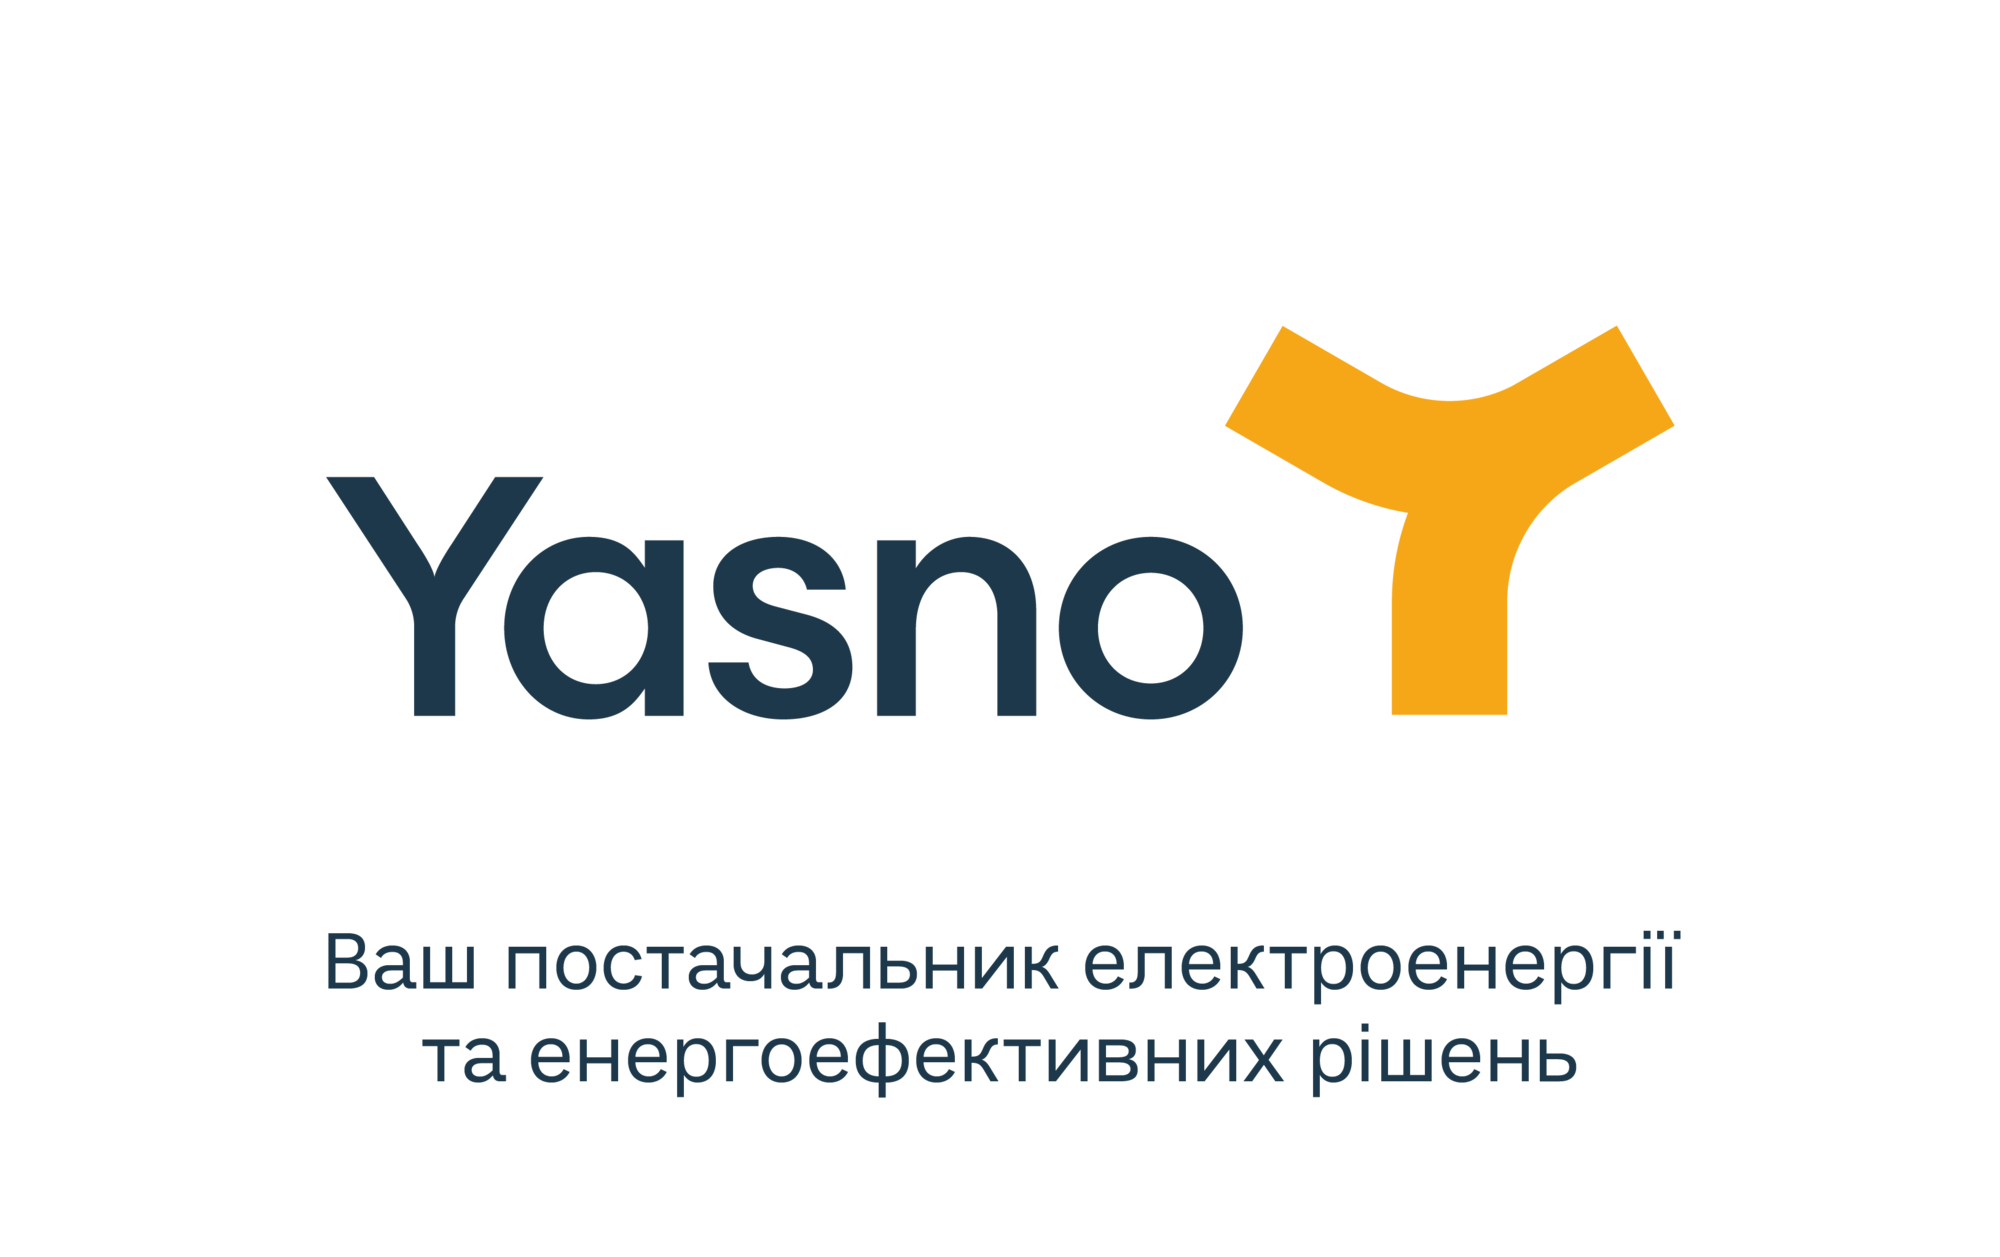 Энергоэффективные наборы от Yasno появились в интернет-магазине Rozetka